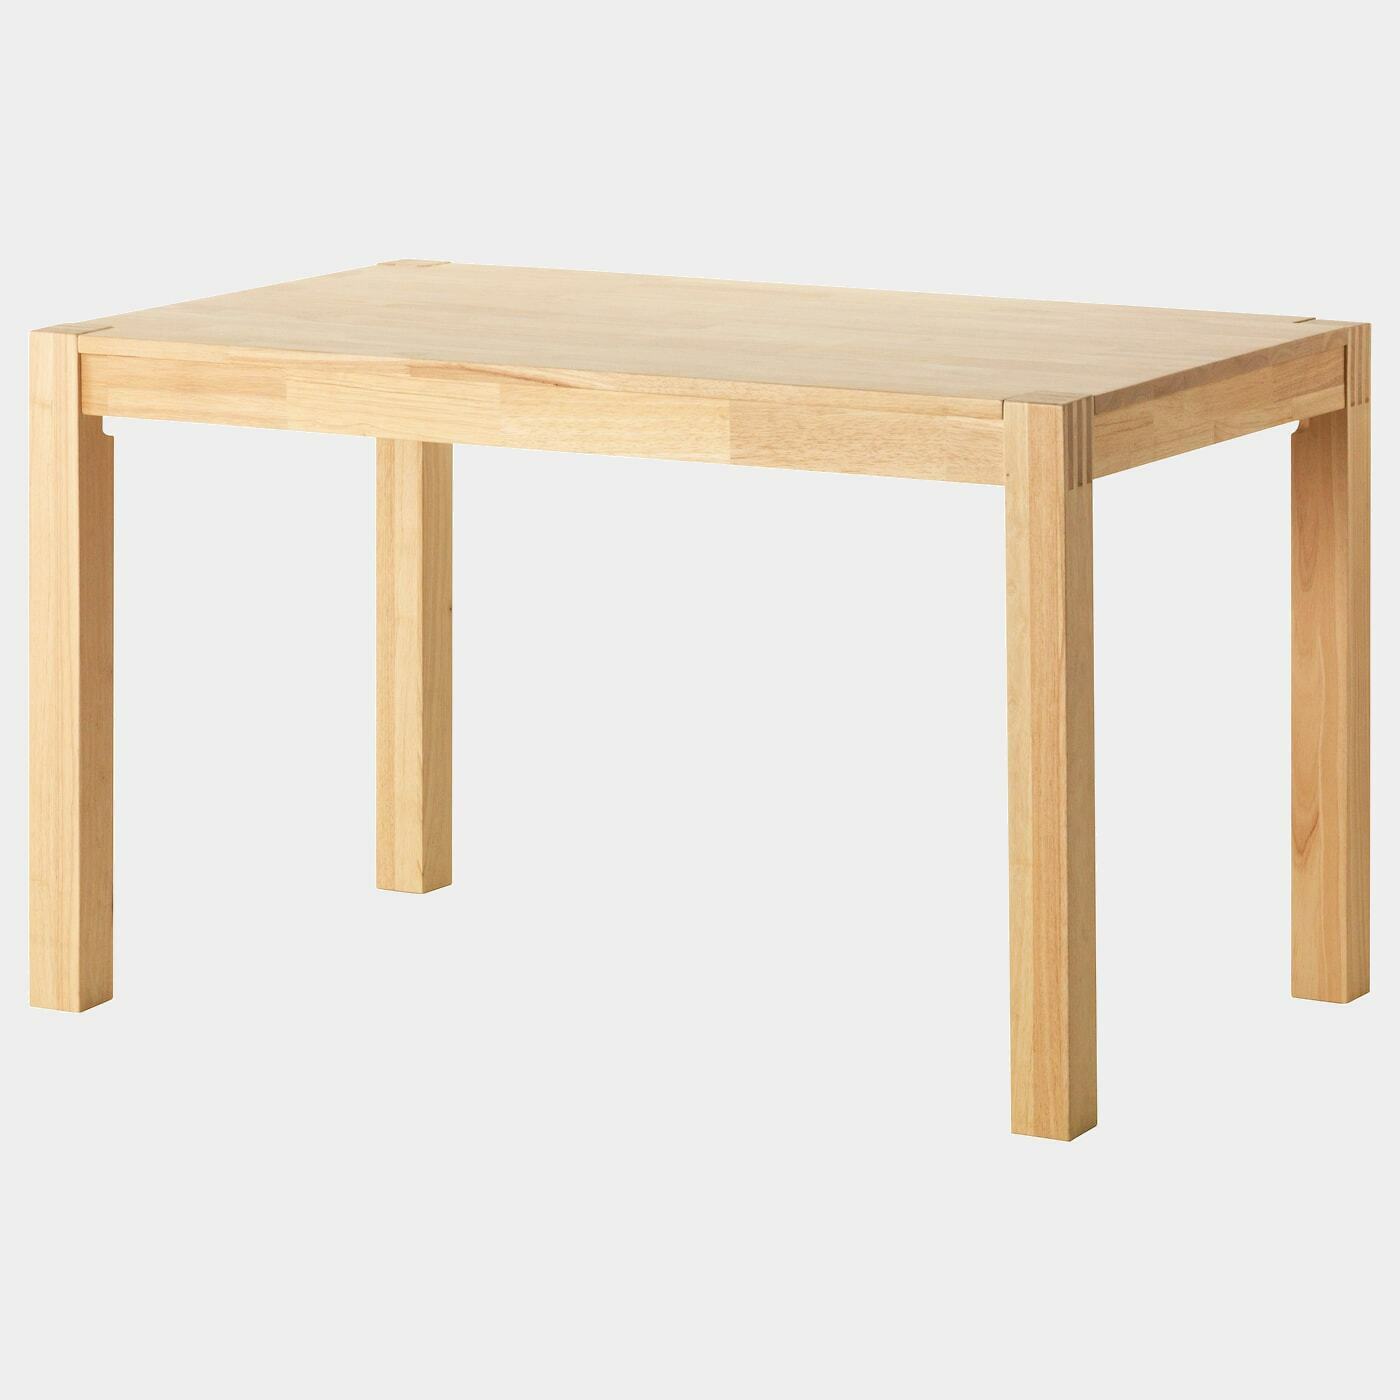 NORDBY Tisch  - Esstische - Möbel Ideen für dein Zuhause von Home Trends. Möbel Trends von Social Media Influencer für dein Skandi Zuhause.